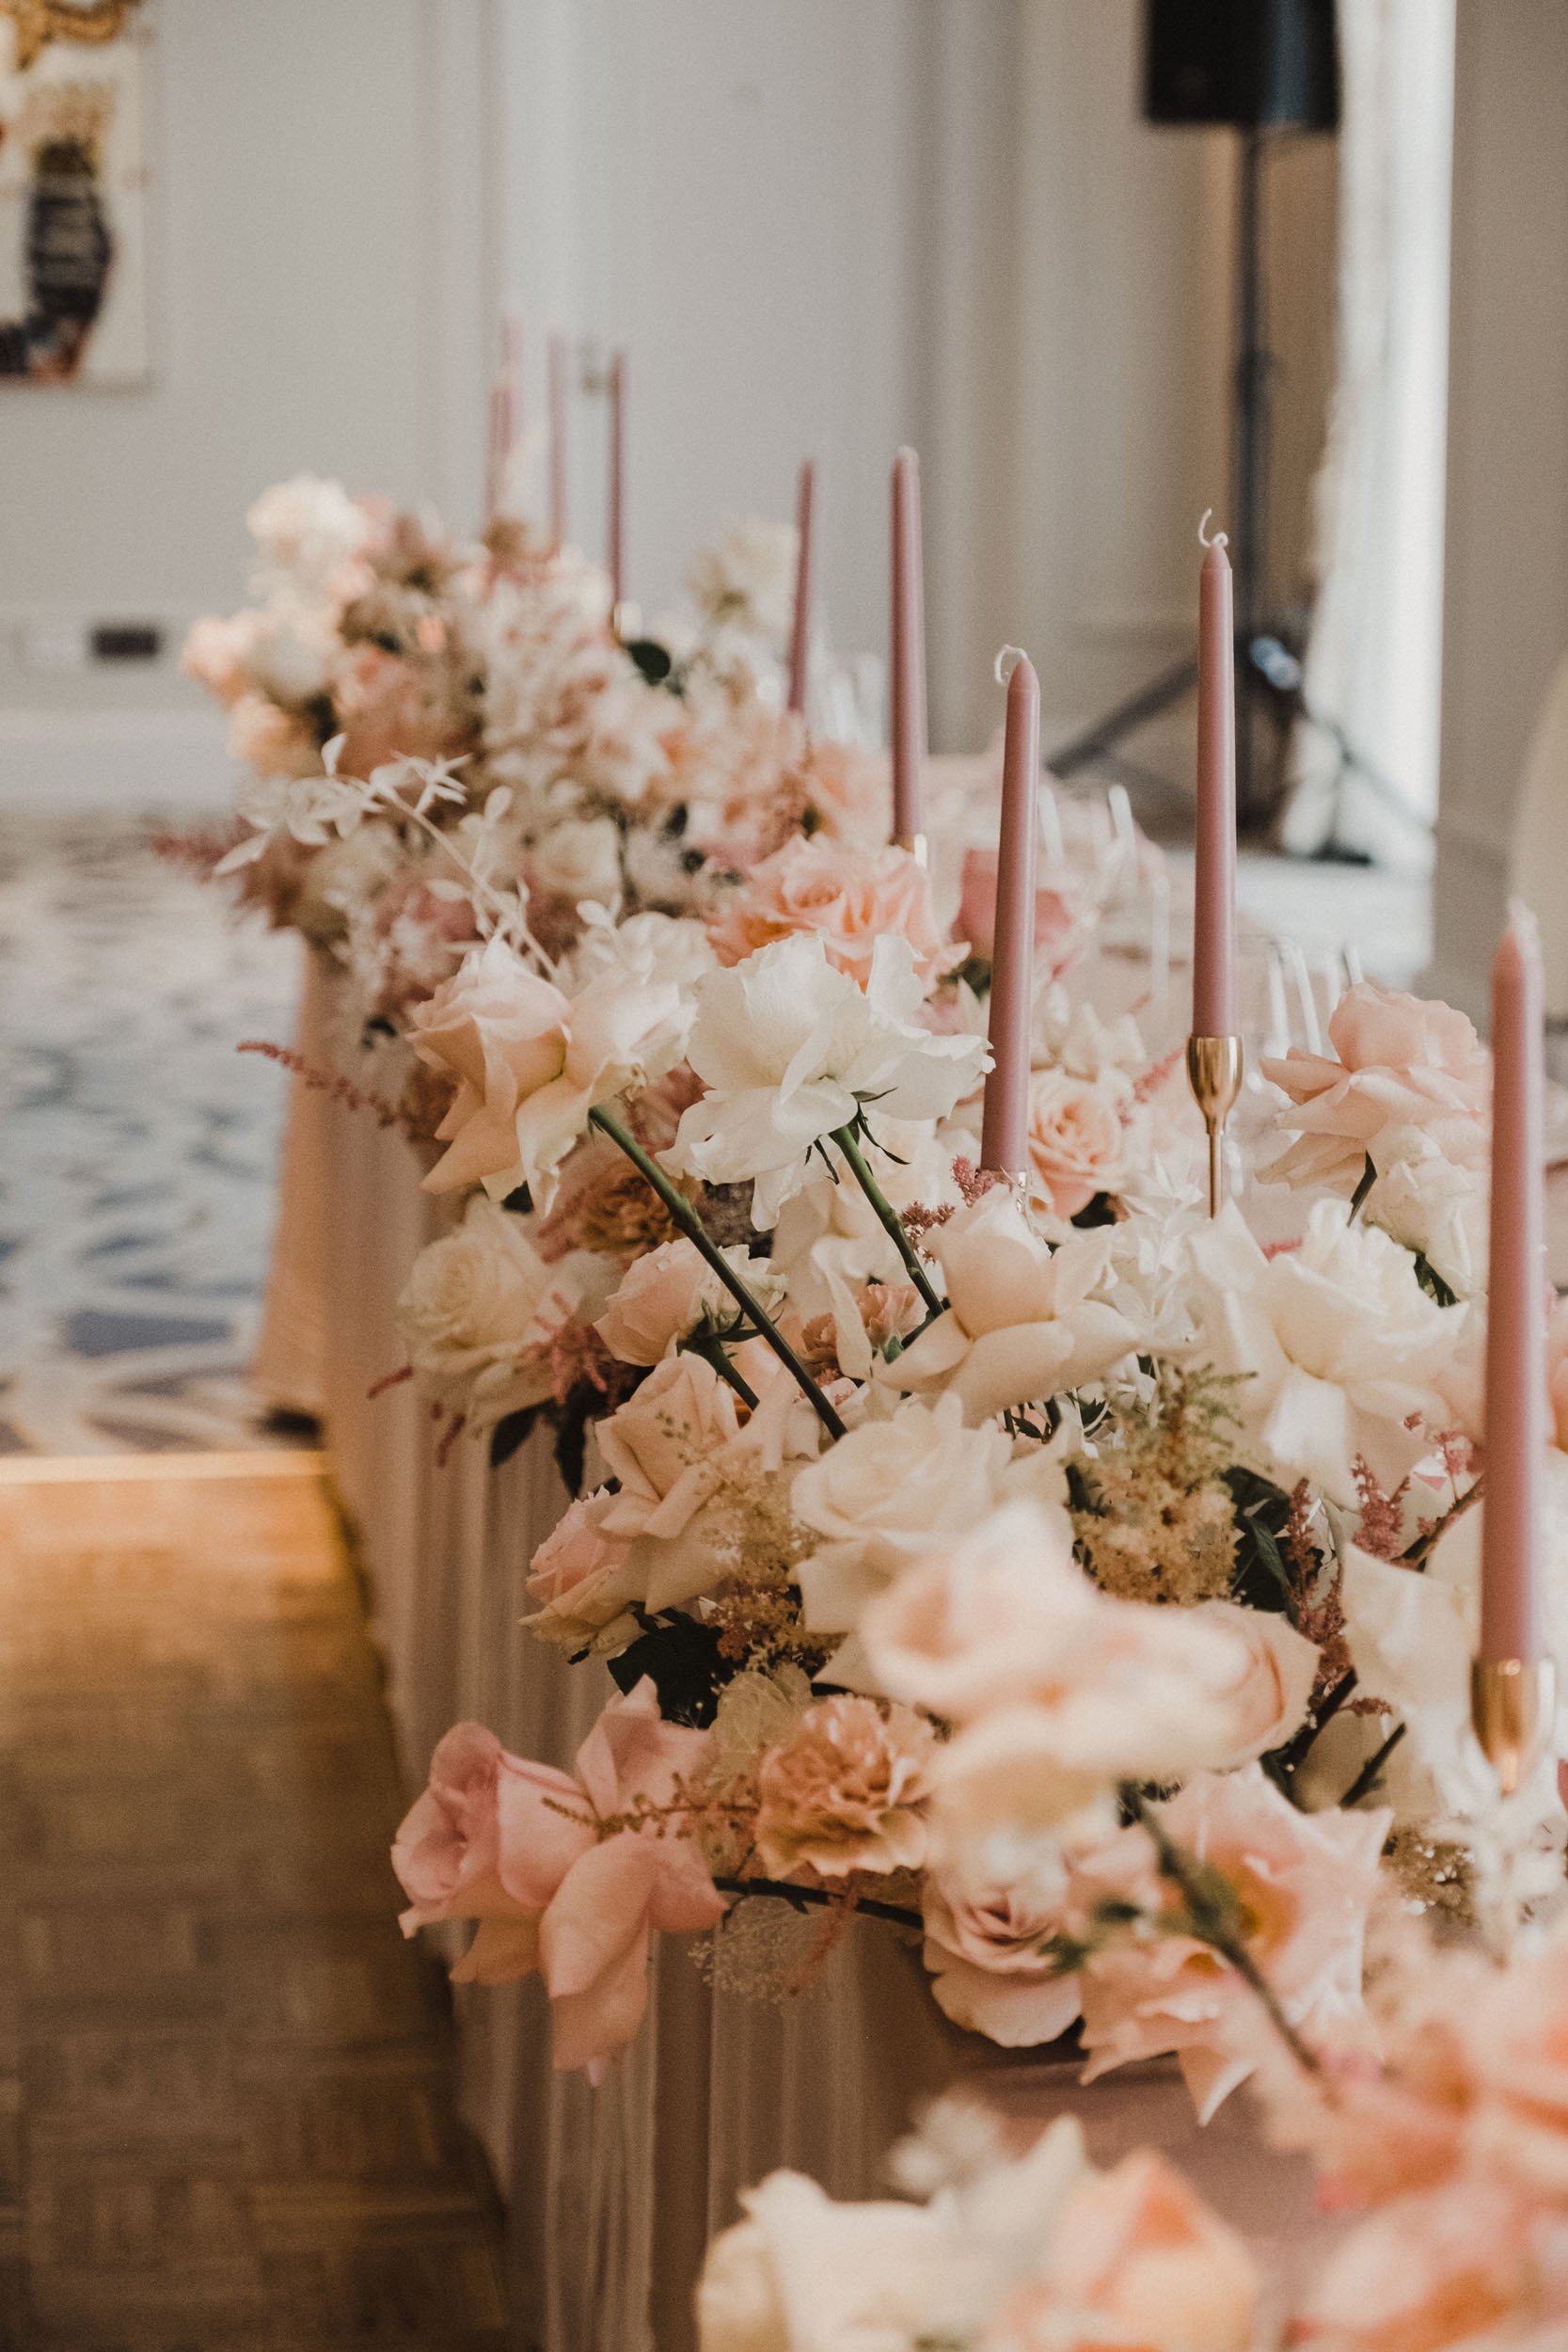 Darren & Wen - Wedding table flowers